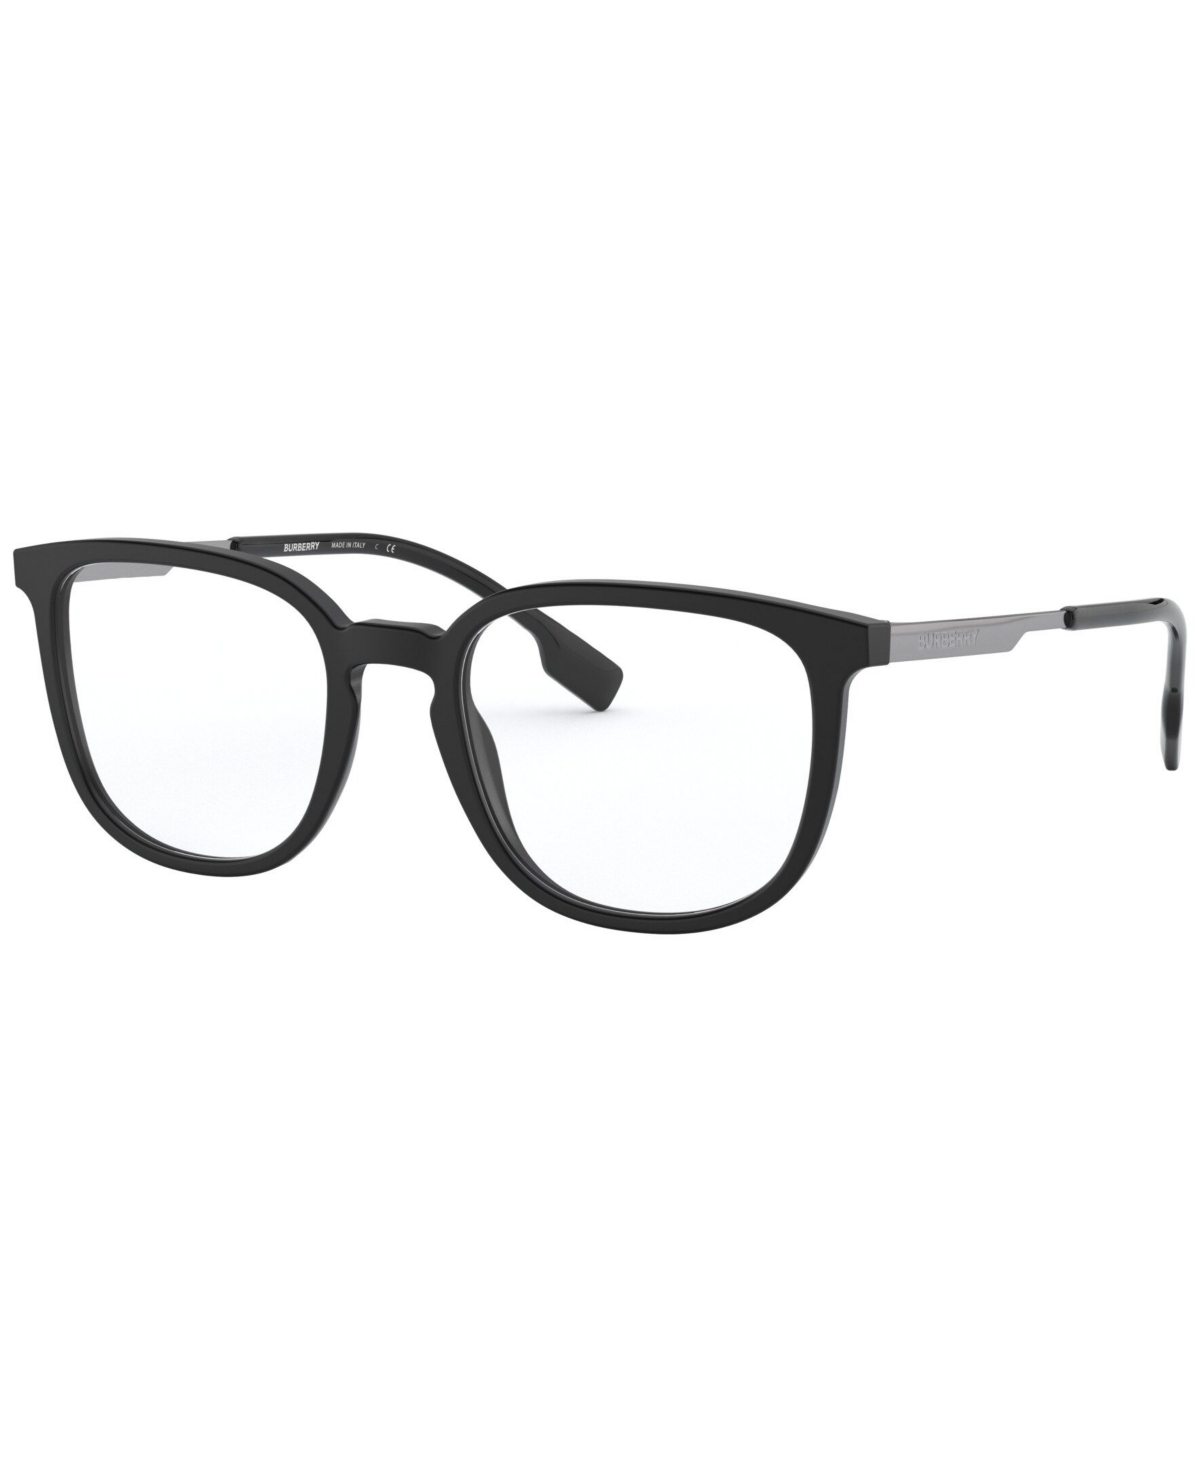 BE2307 Men's Square Eyeglasses - Black